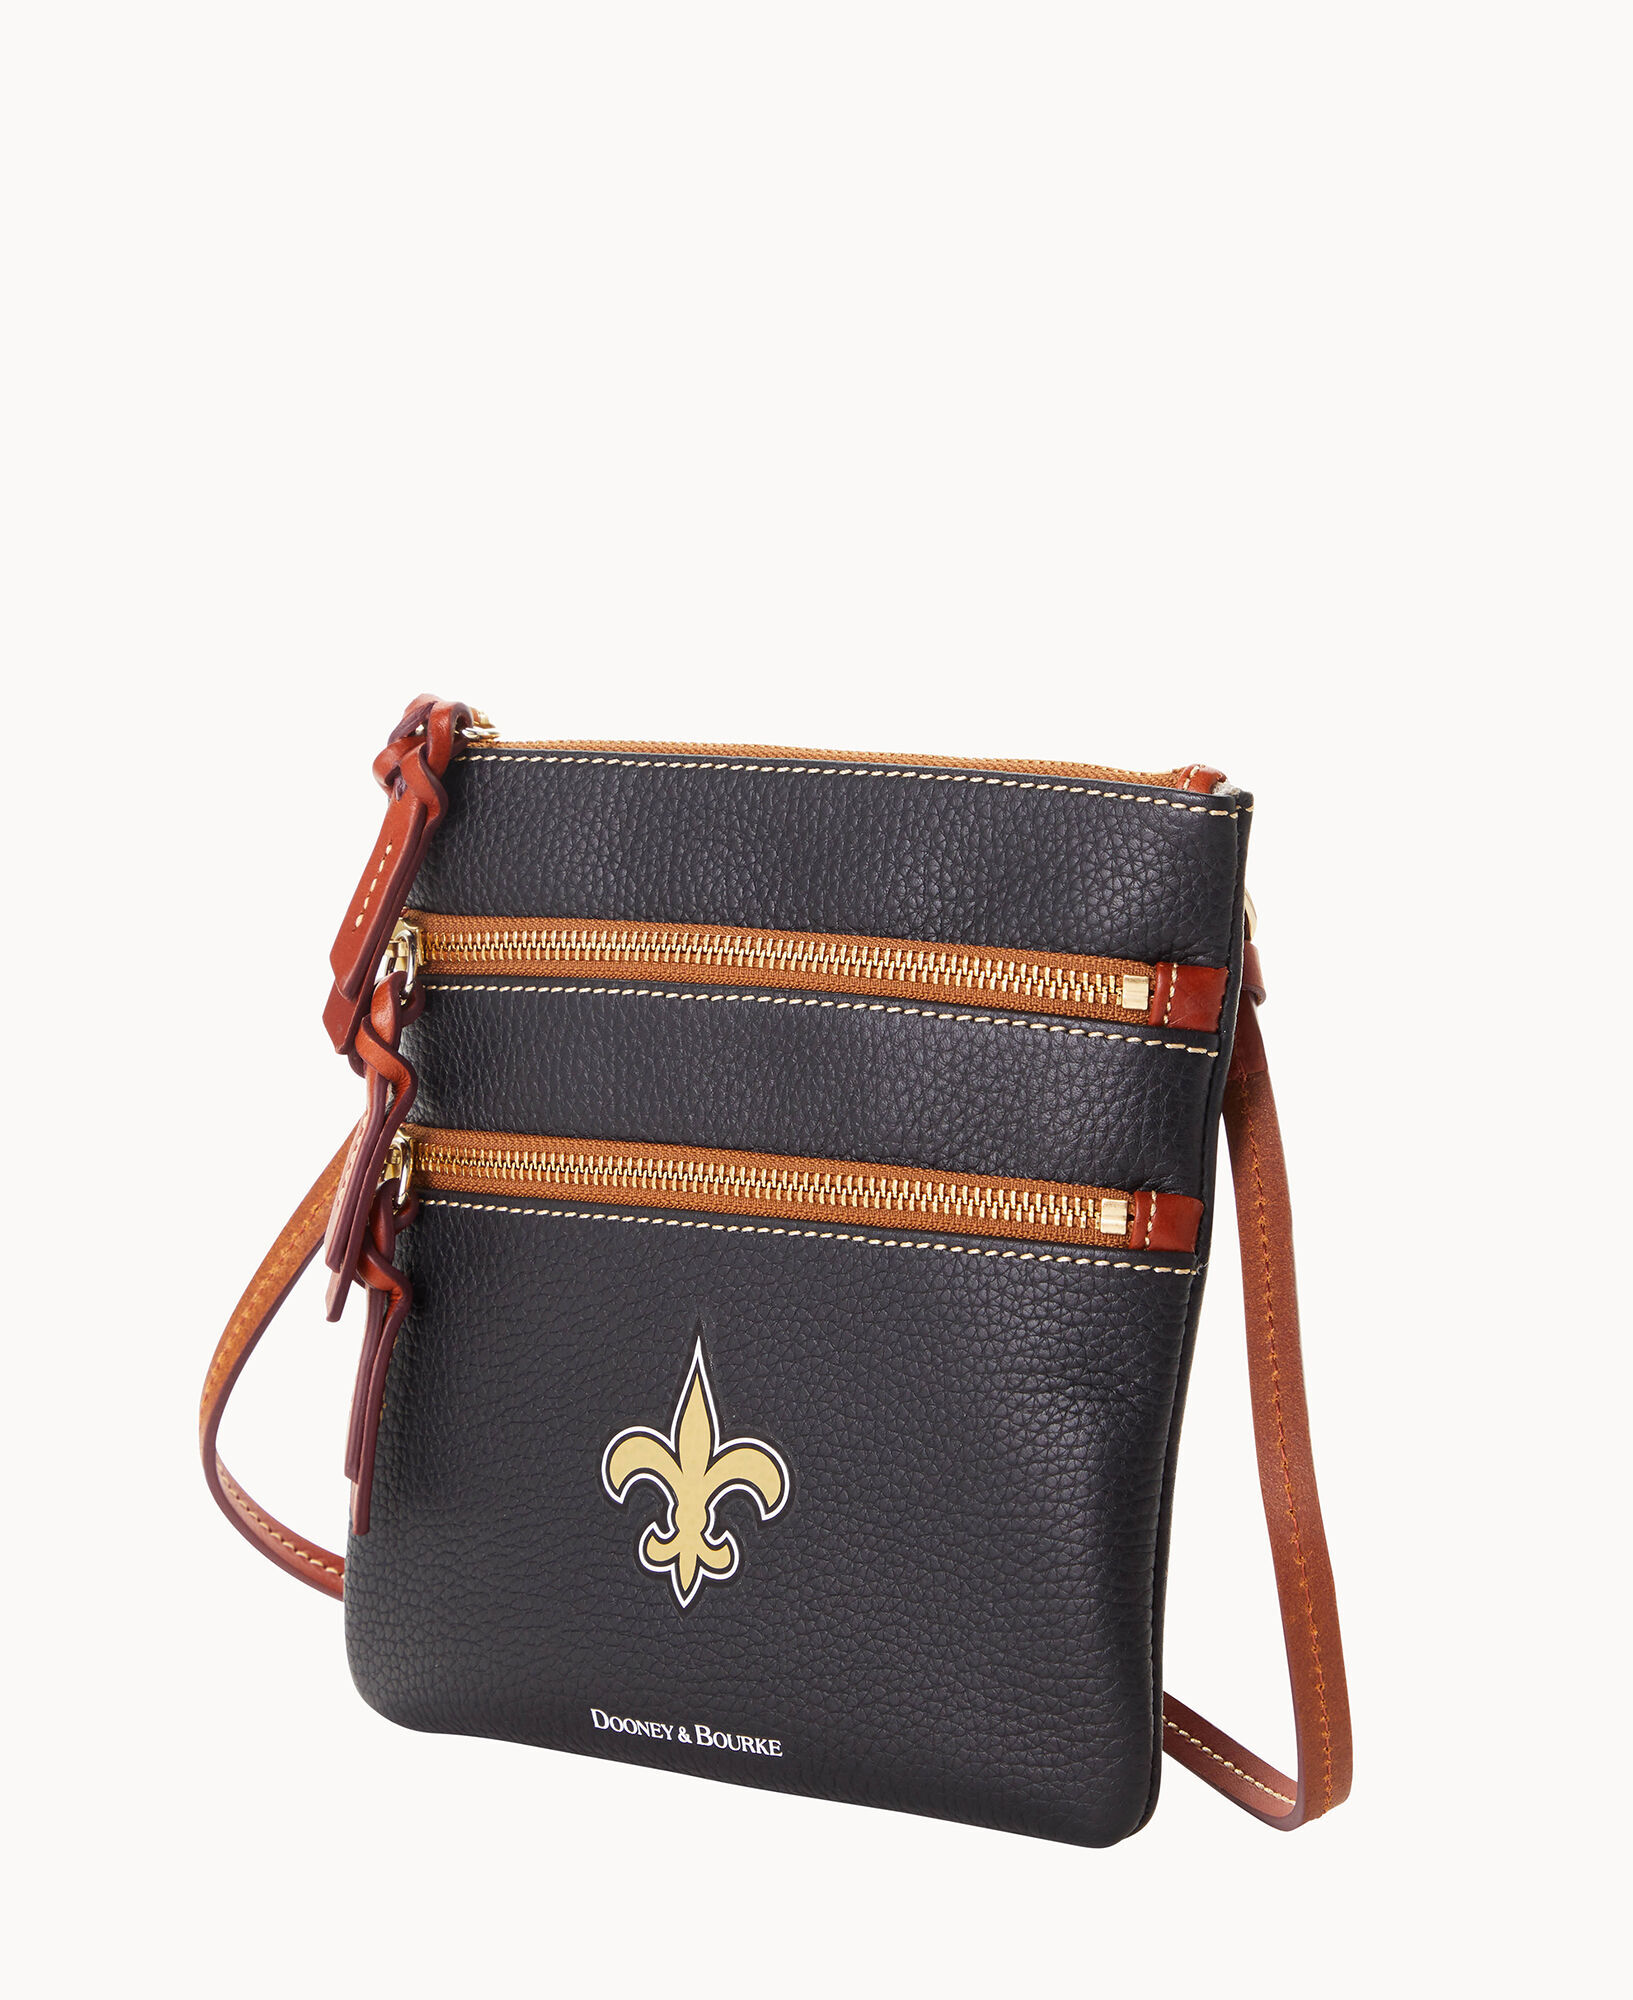 Women's Dooney & Bourke New Orleans Saints Triple-Zip Crossbody Bag